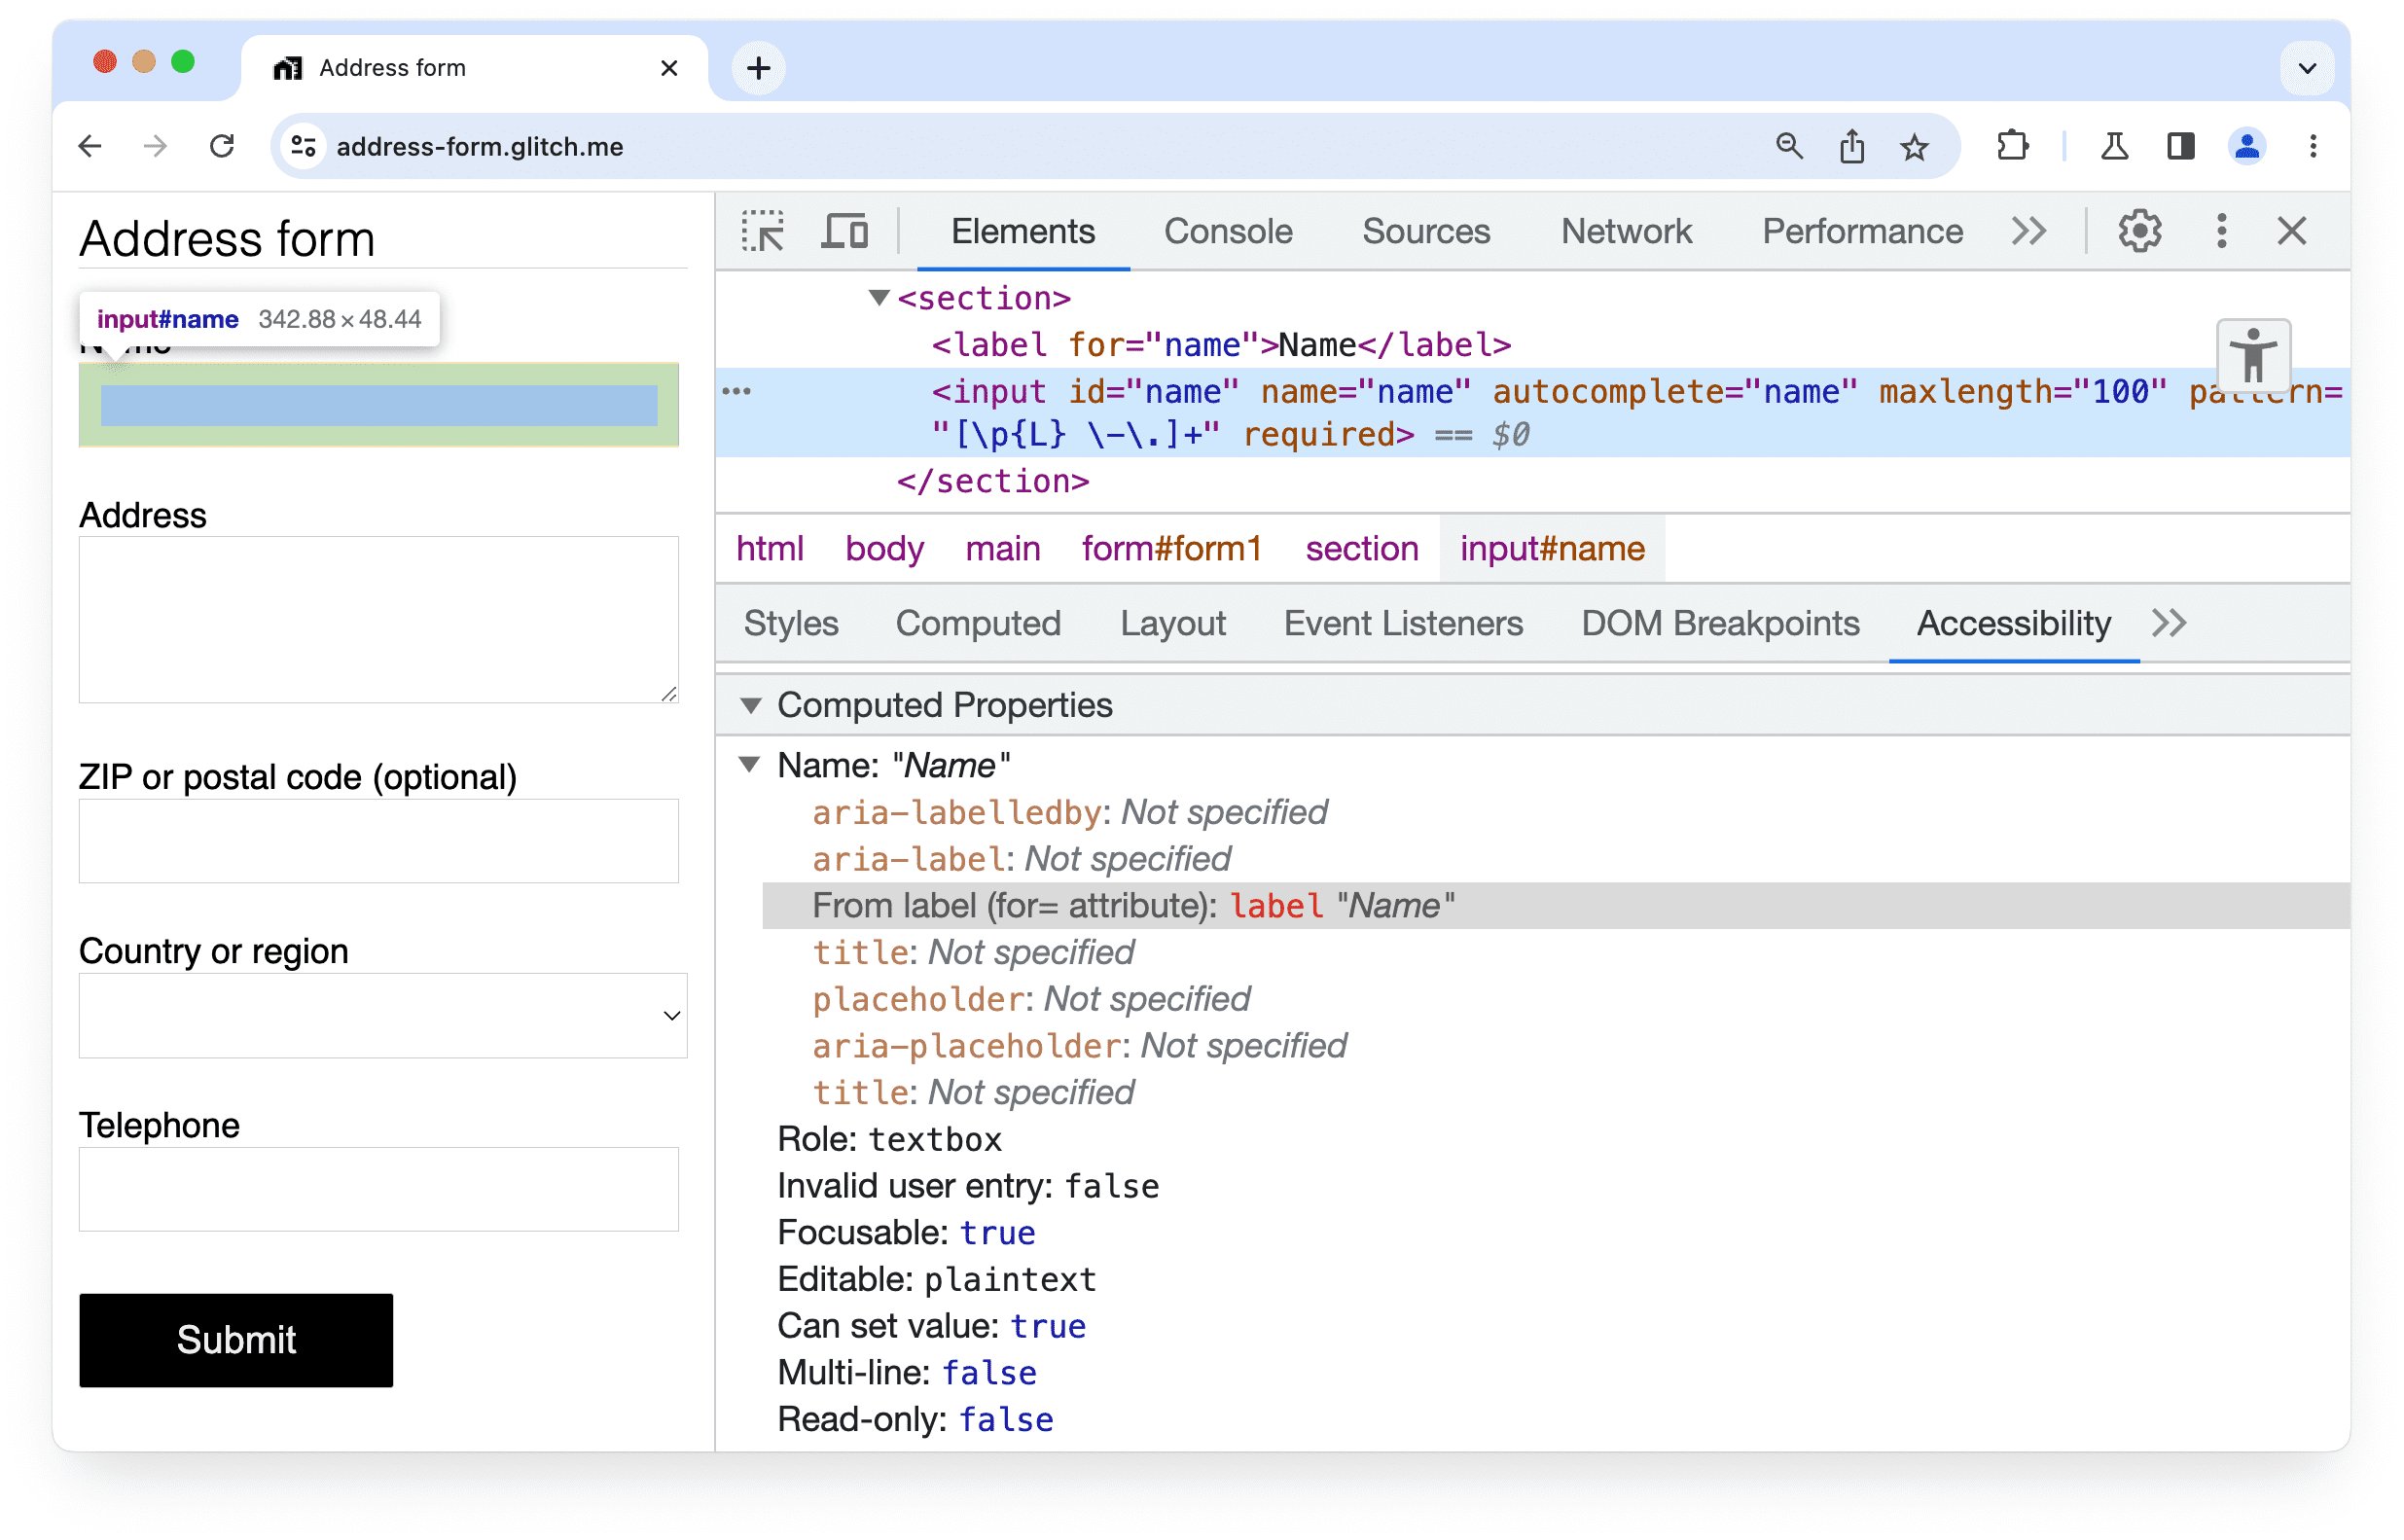 أدوات مطوّري البرامج في Chrome
لوحة &quot;تسهيل الاستخدام&quot; توضّح أنه تم العثور على تصنيف لعنصر إدخال في نموذج